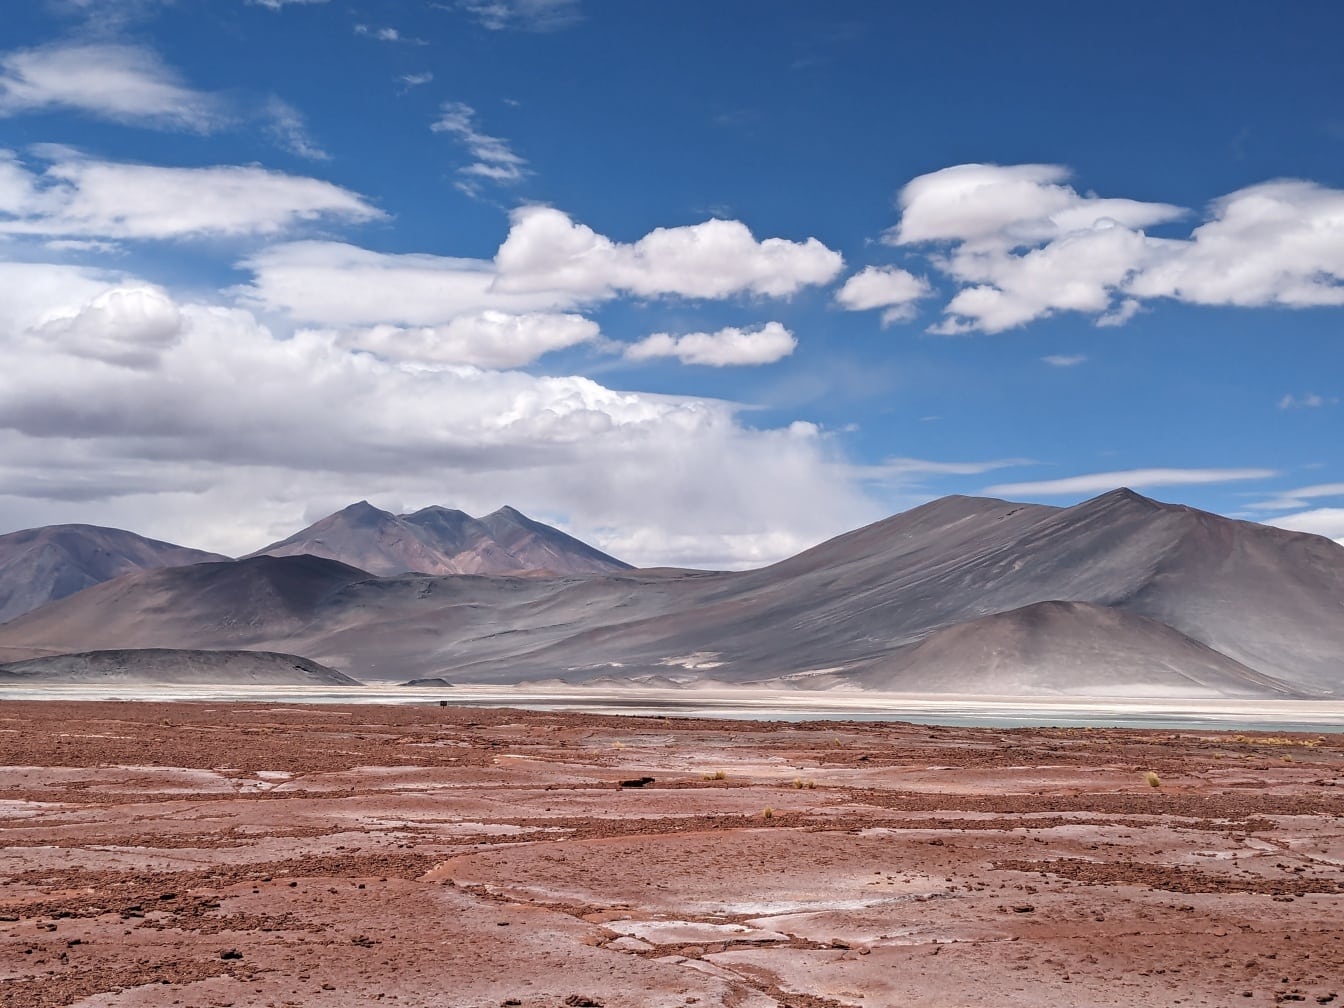 Phong cảnh của Salar de Talar, một cao nguyên muối ở Andes Chile với những ngọn núi ở phía xa